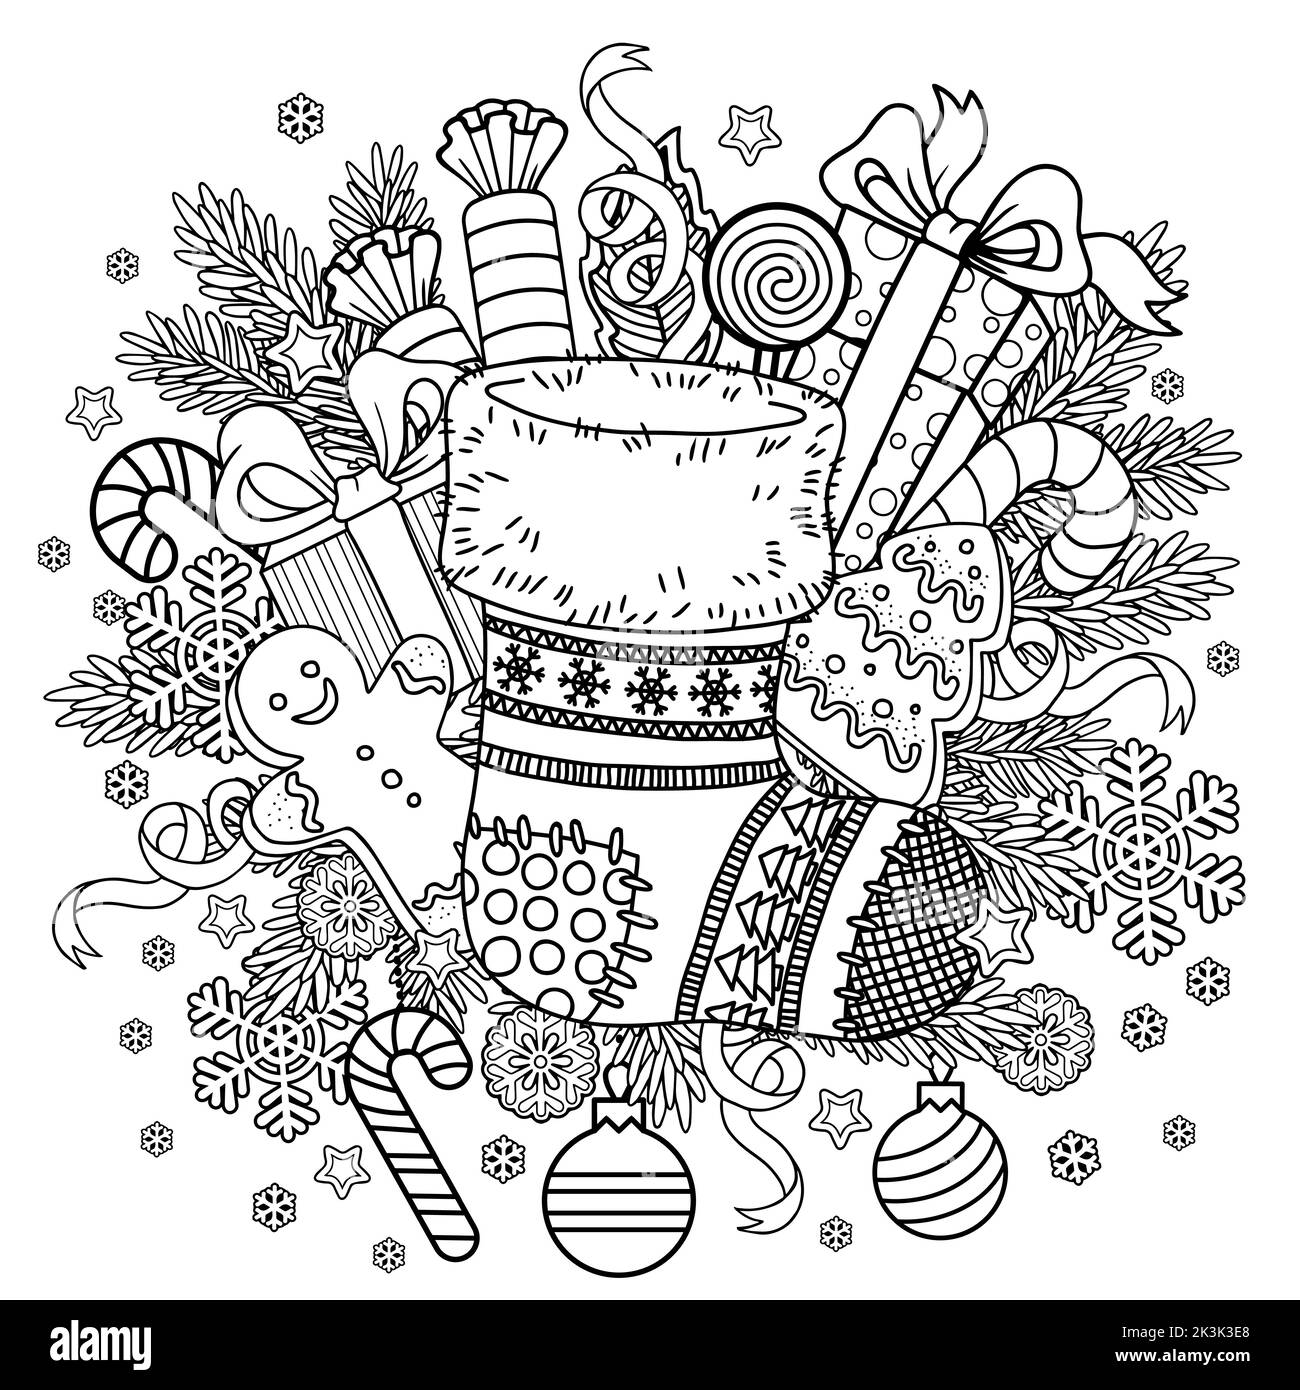 Weihnachten mandala Schwarzweiß-Stockfotos und -bilder - Seite 2 - Alamy